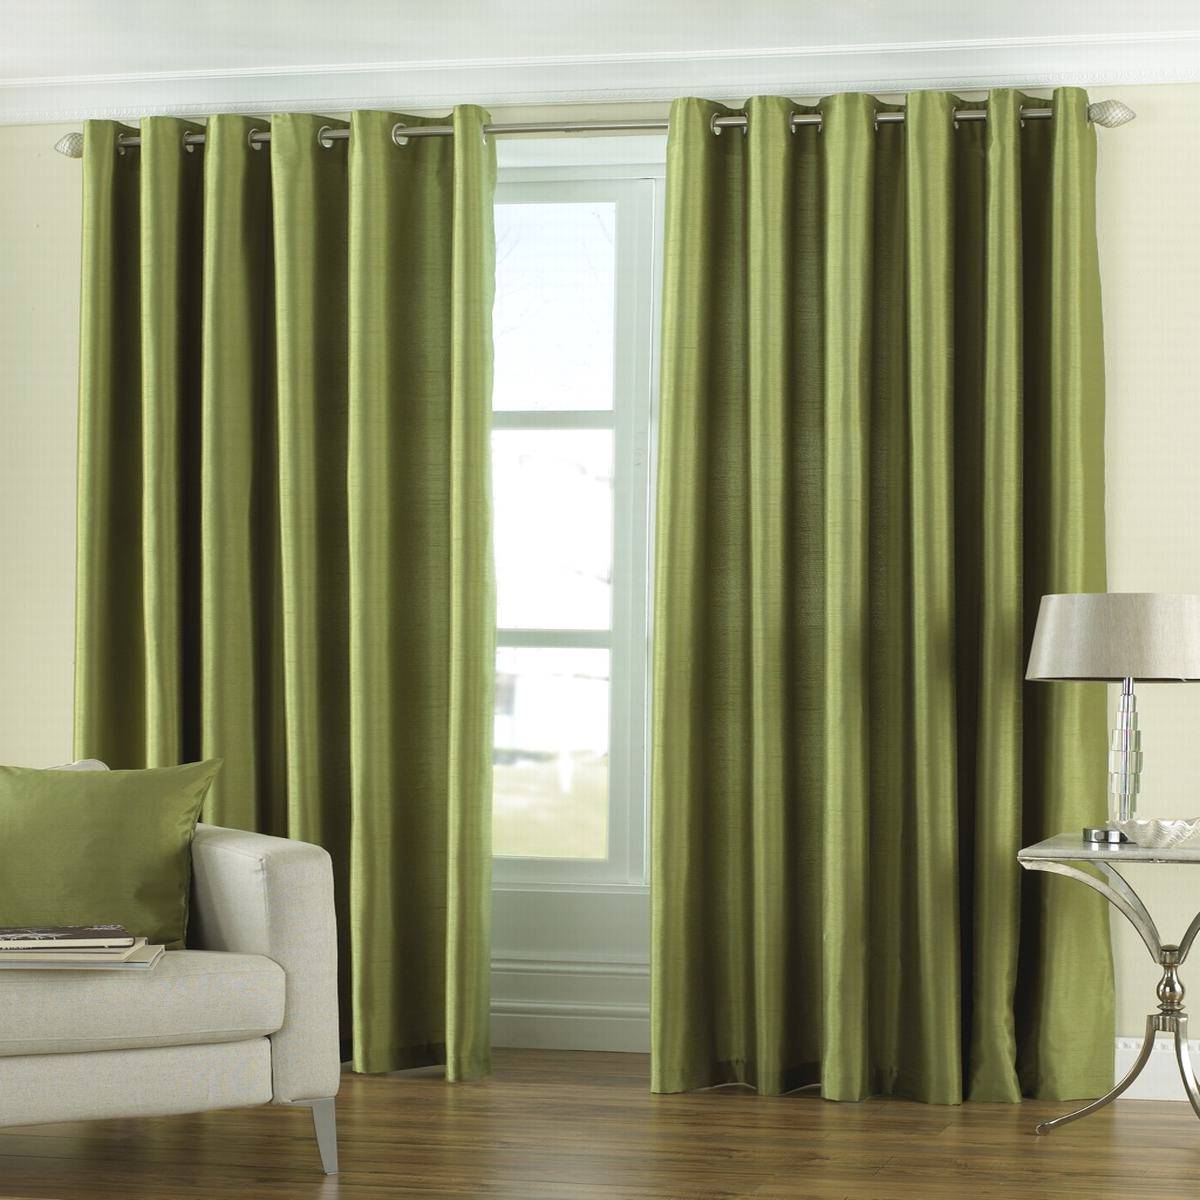 Sage green curtains in Furniture Ideas | DeltaAngelGroup : Furniture ...